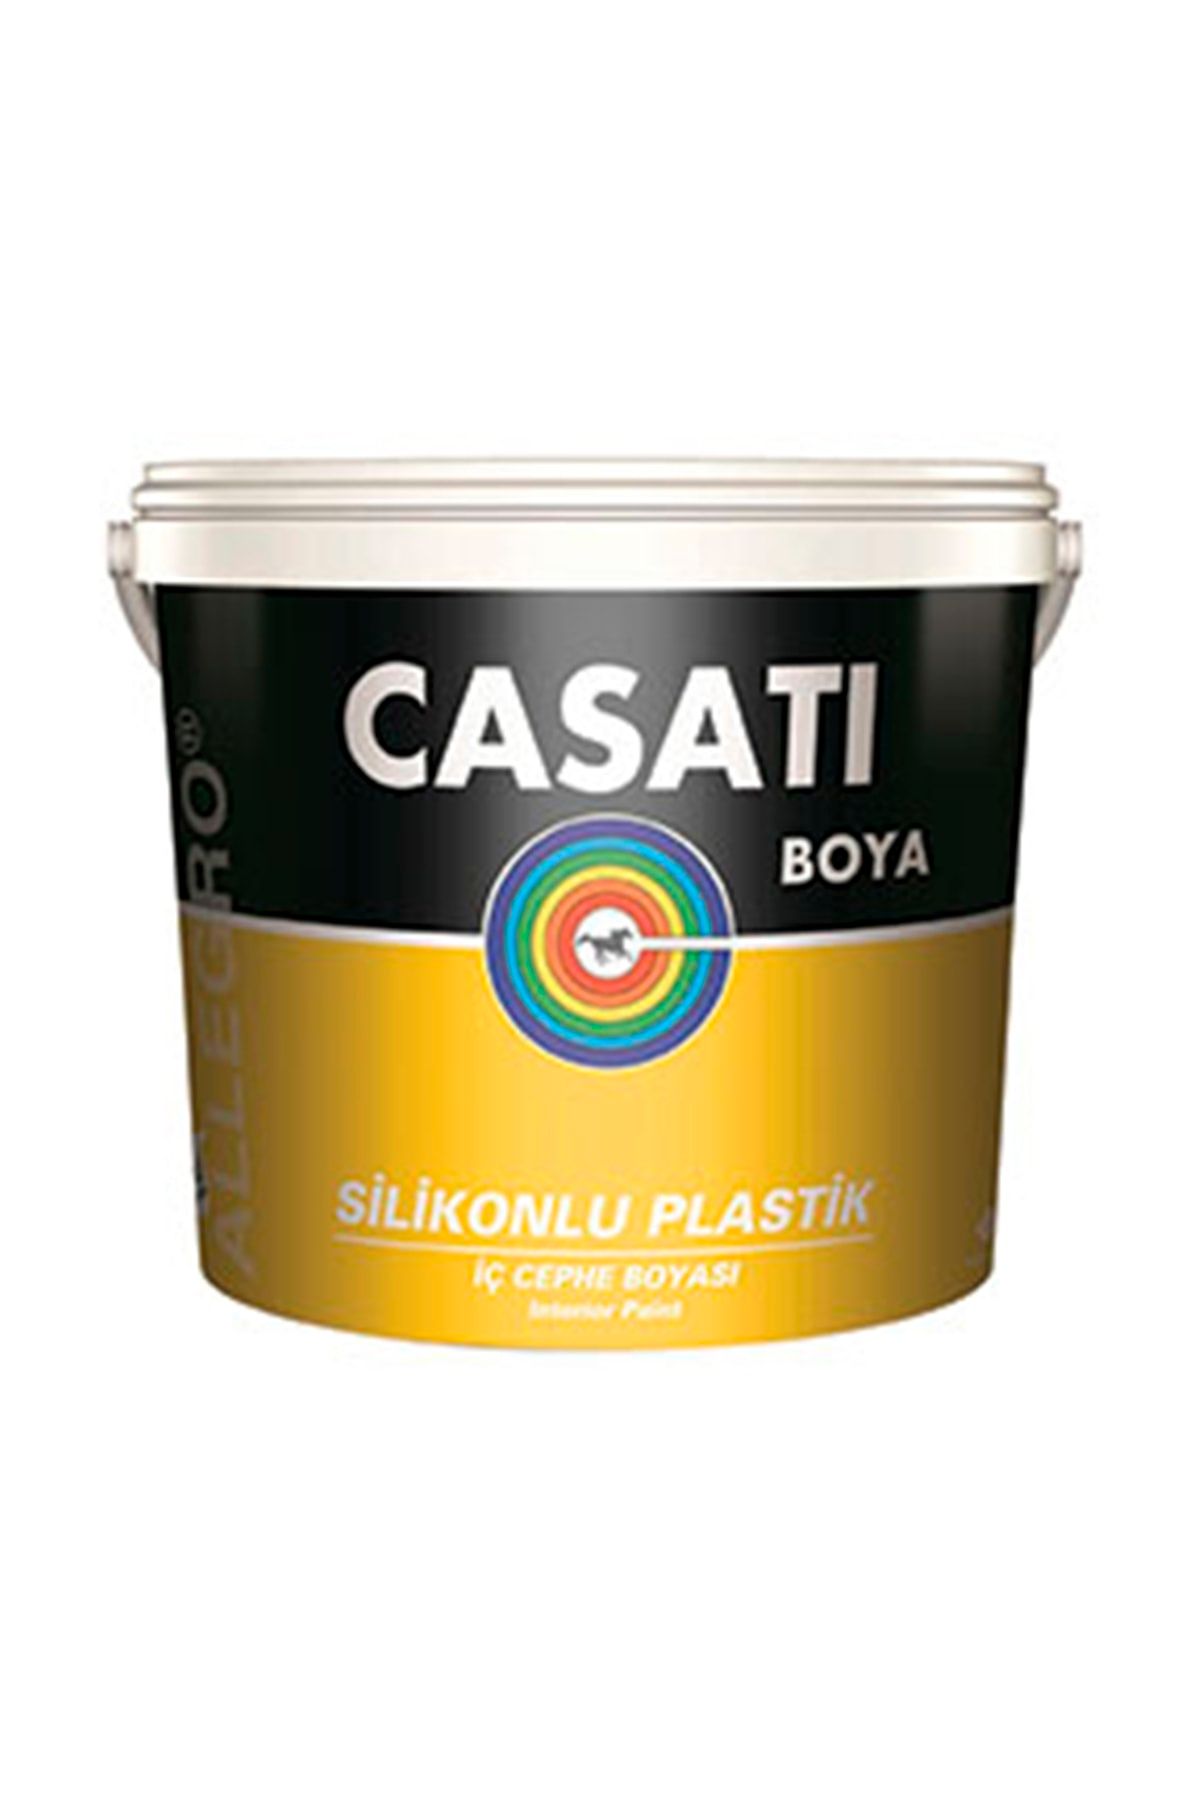 Casati Allegro Silikonlu Plastik Su Bazlı Iç Cephe Boyası Kurdele Pembesi 3,5 Kg